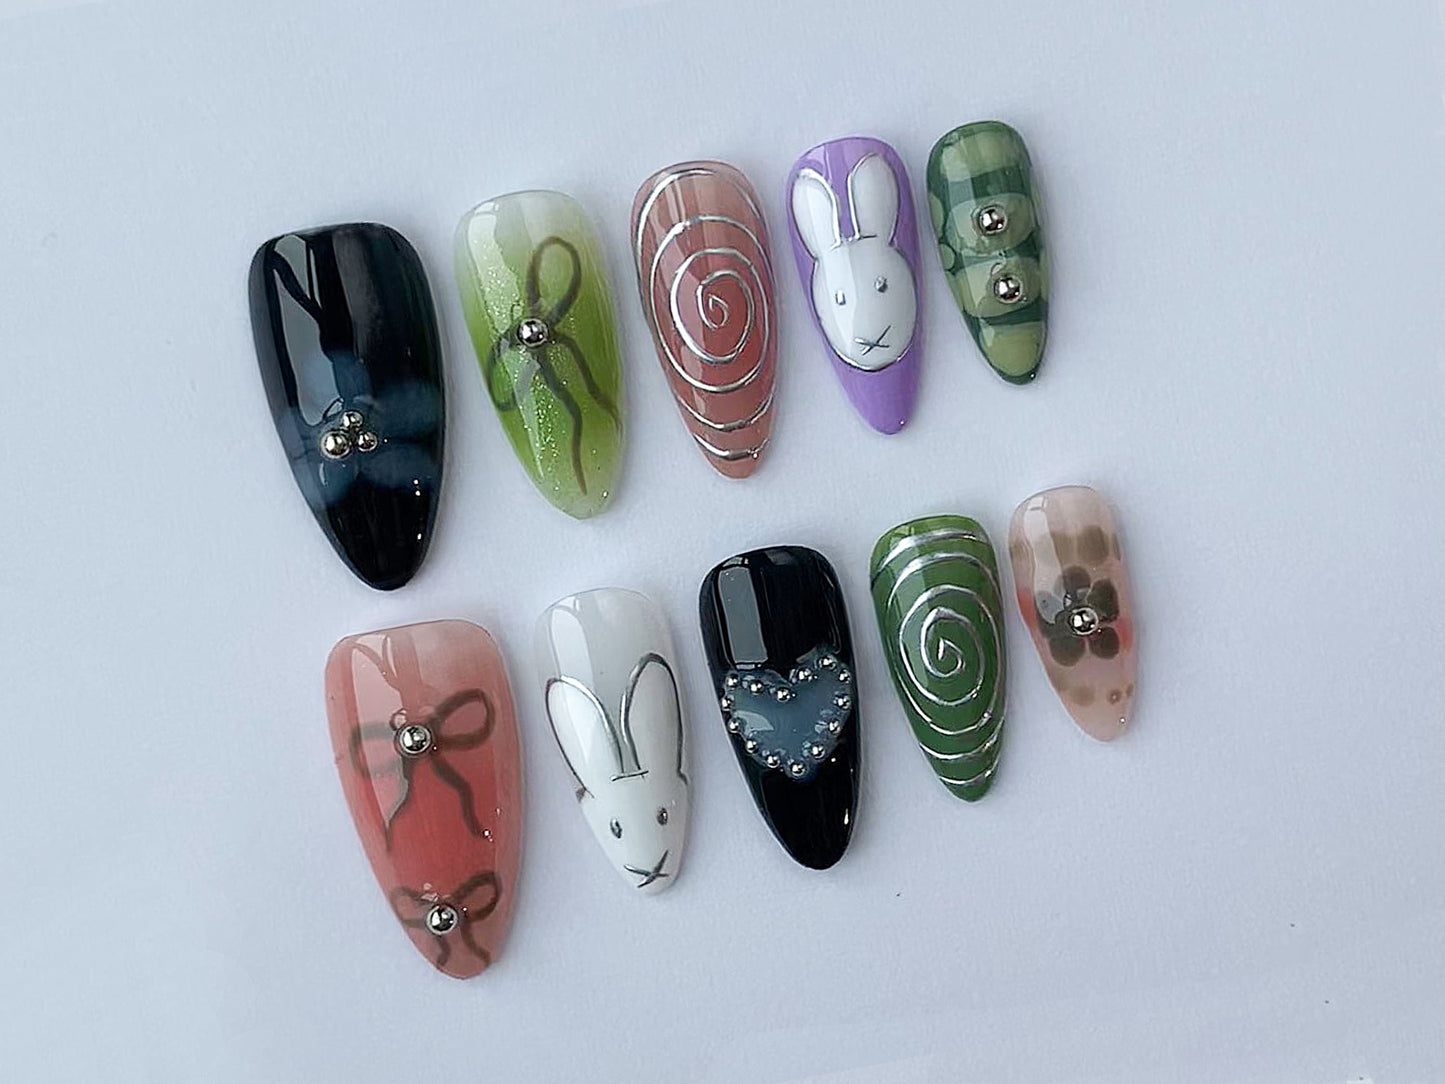 Colorful Bunny Miffy Press On Nails | Handpainted Colorful Nails | Handcrafted Cute Nails | Sweet Nail Set | Cute Nails | Fake Nails | J79